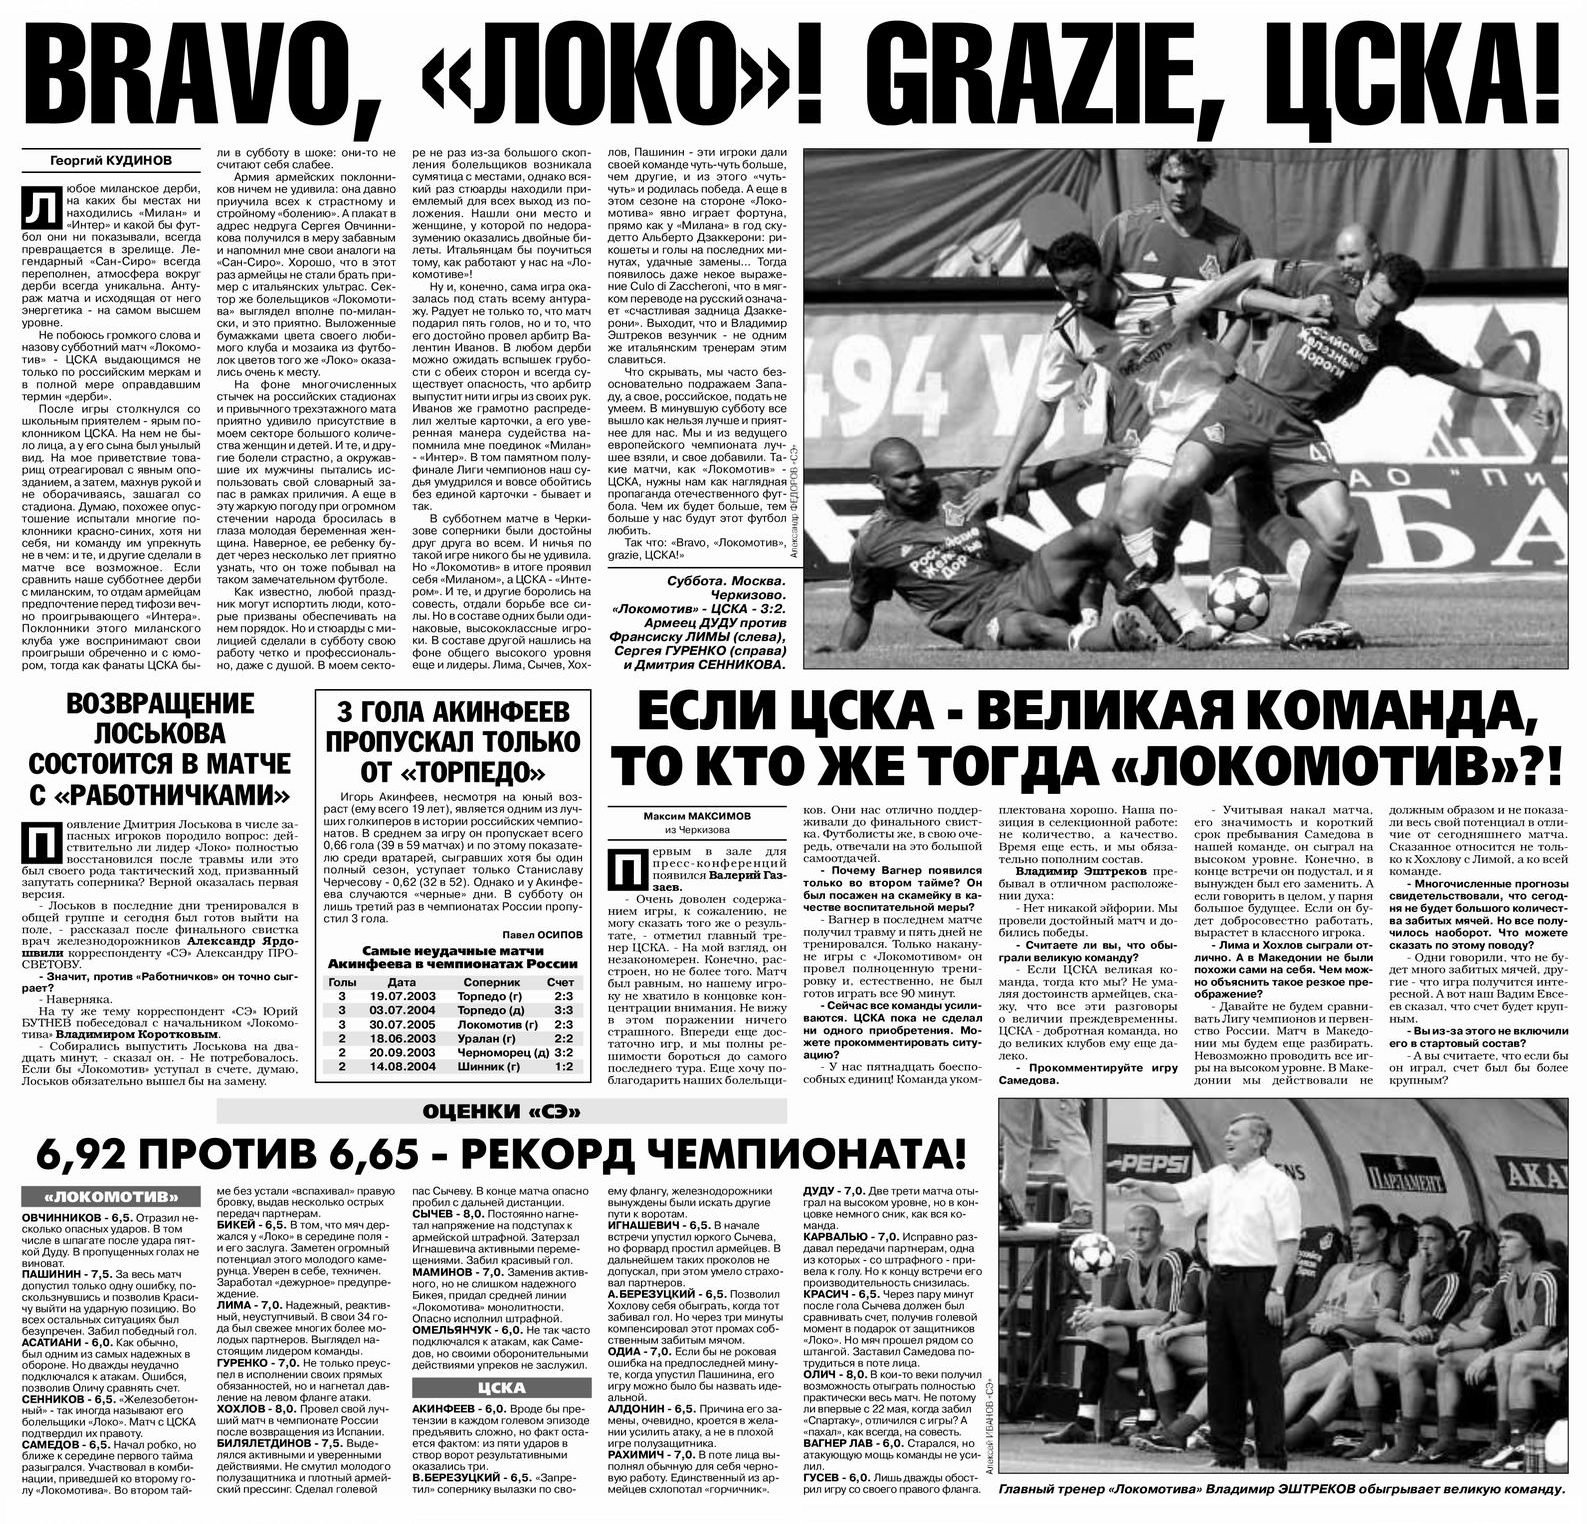 2005-07-30.LokomotivM-CSKA.4